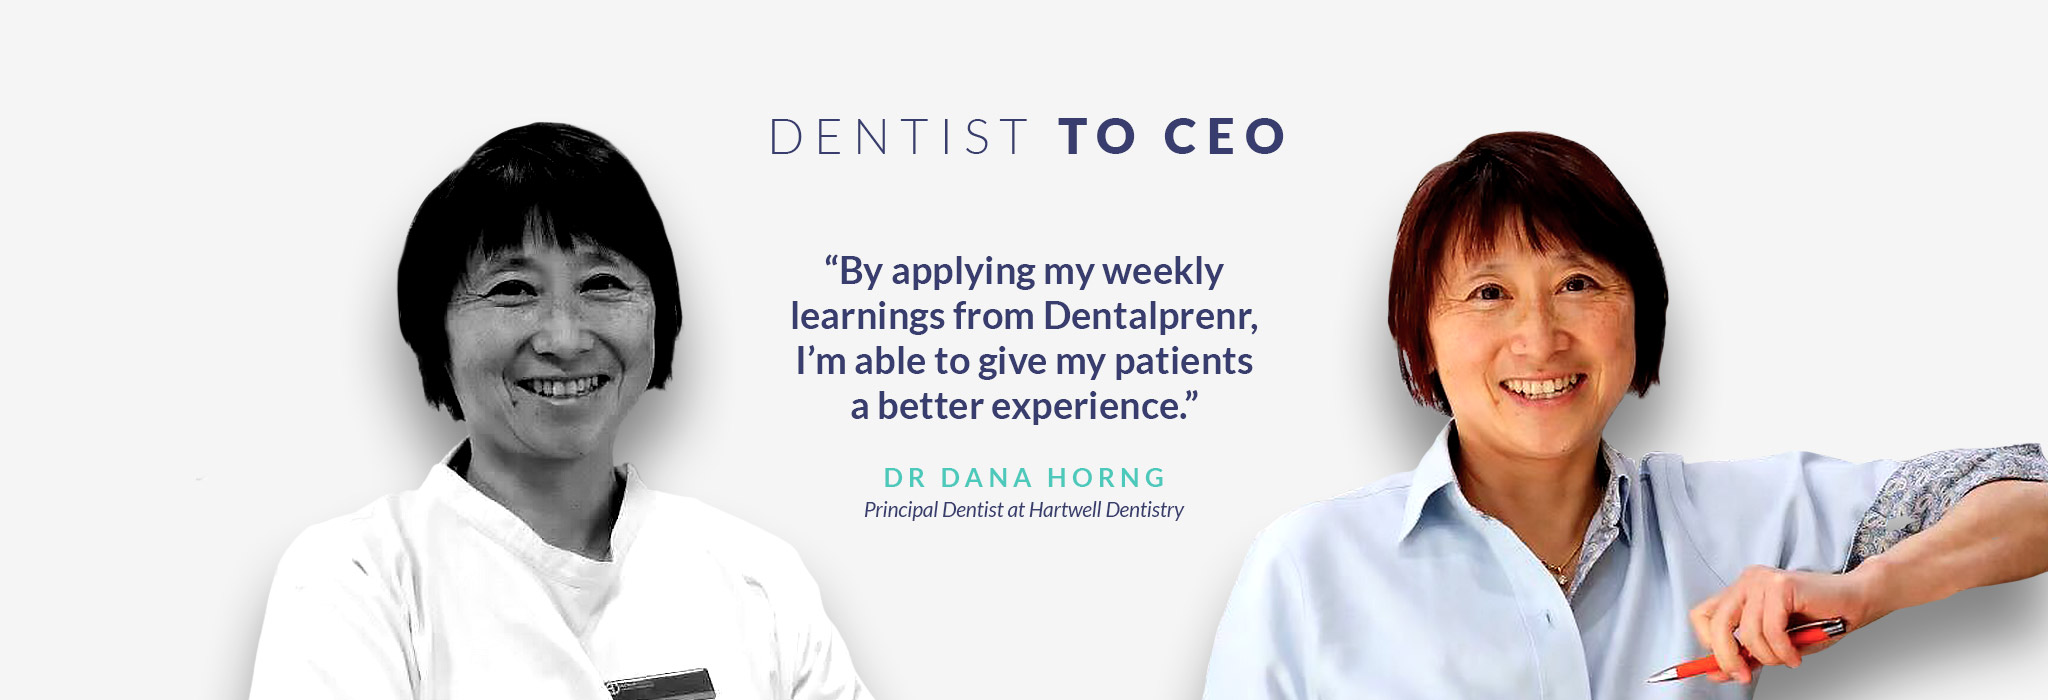 dentist_to_ceo_dana